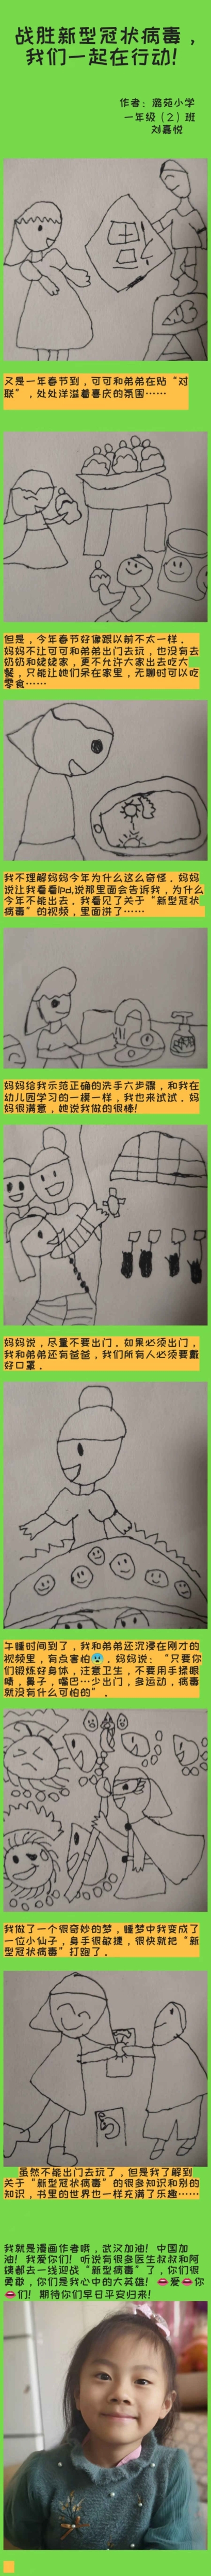 北京市通州区潞苑小学一2班 刘嘉悦  抗疫漫画